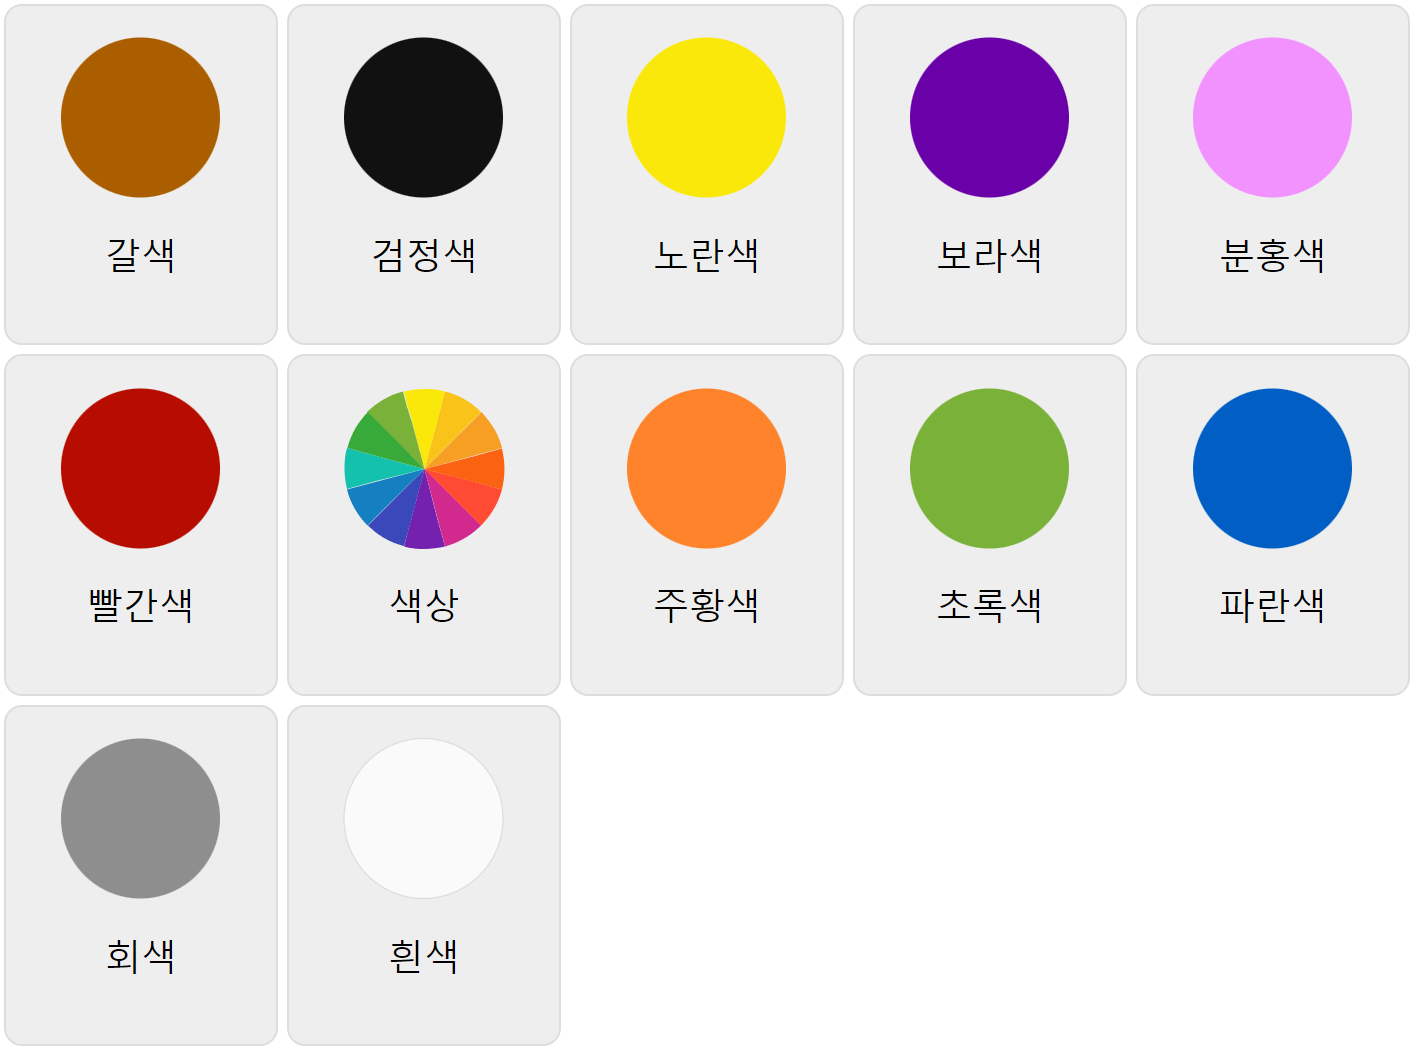 Цвета на корейском языке